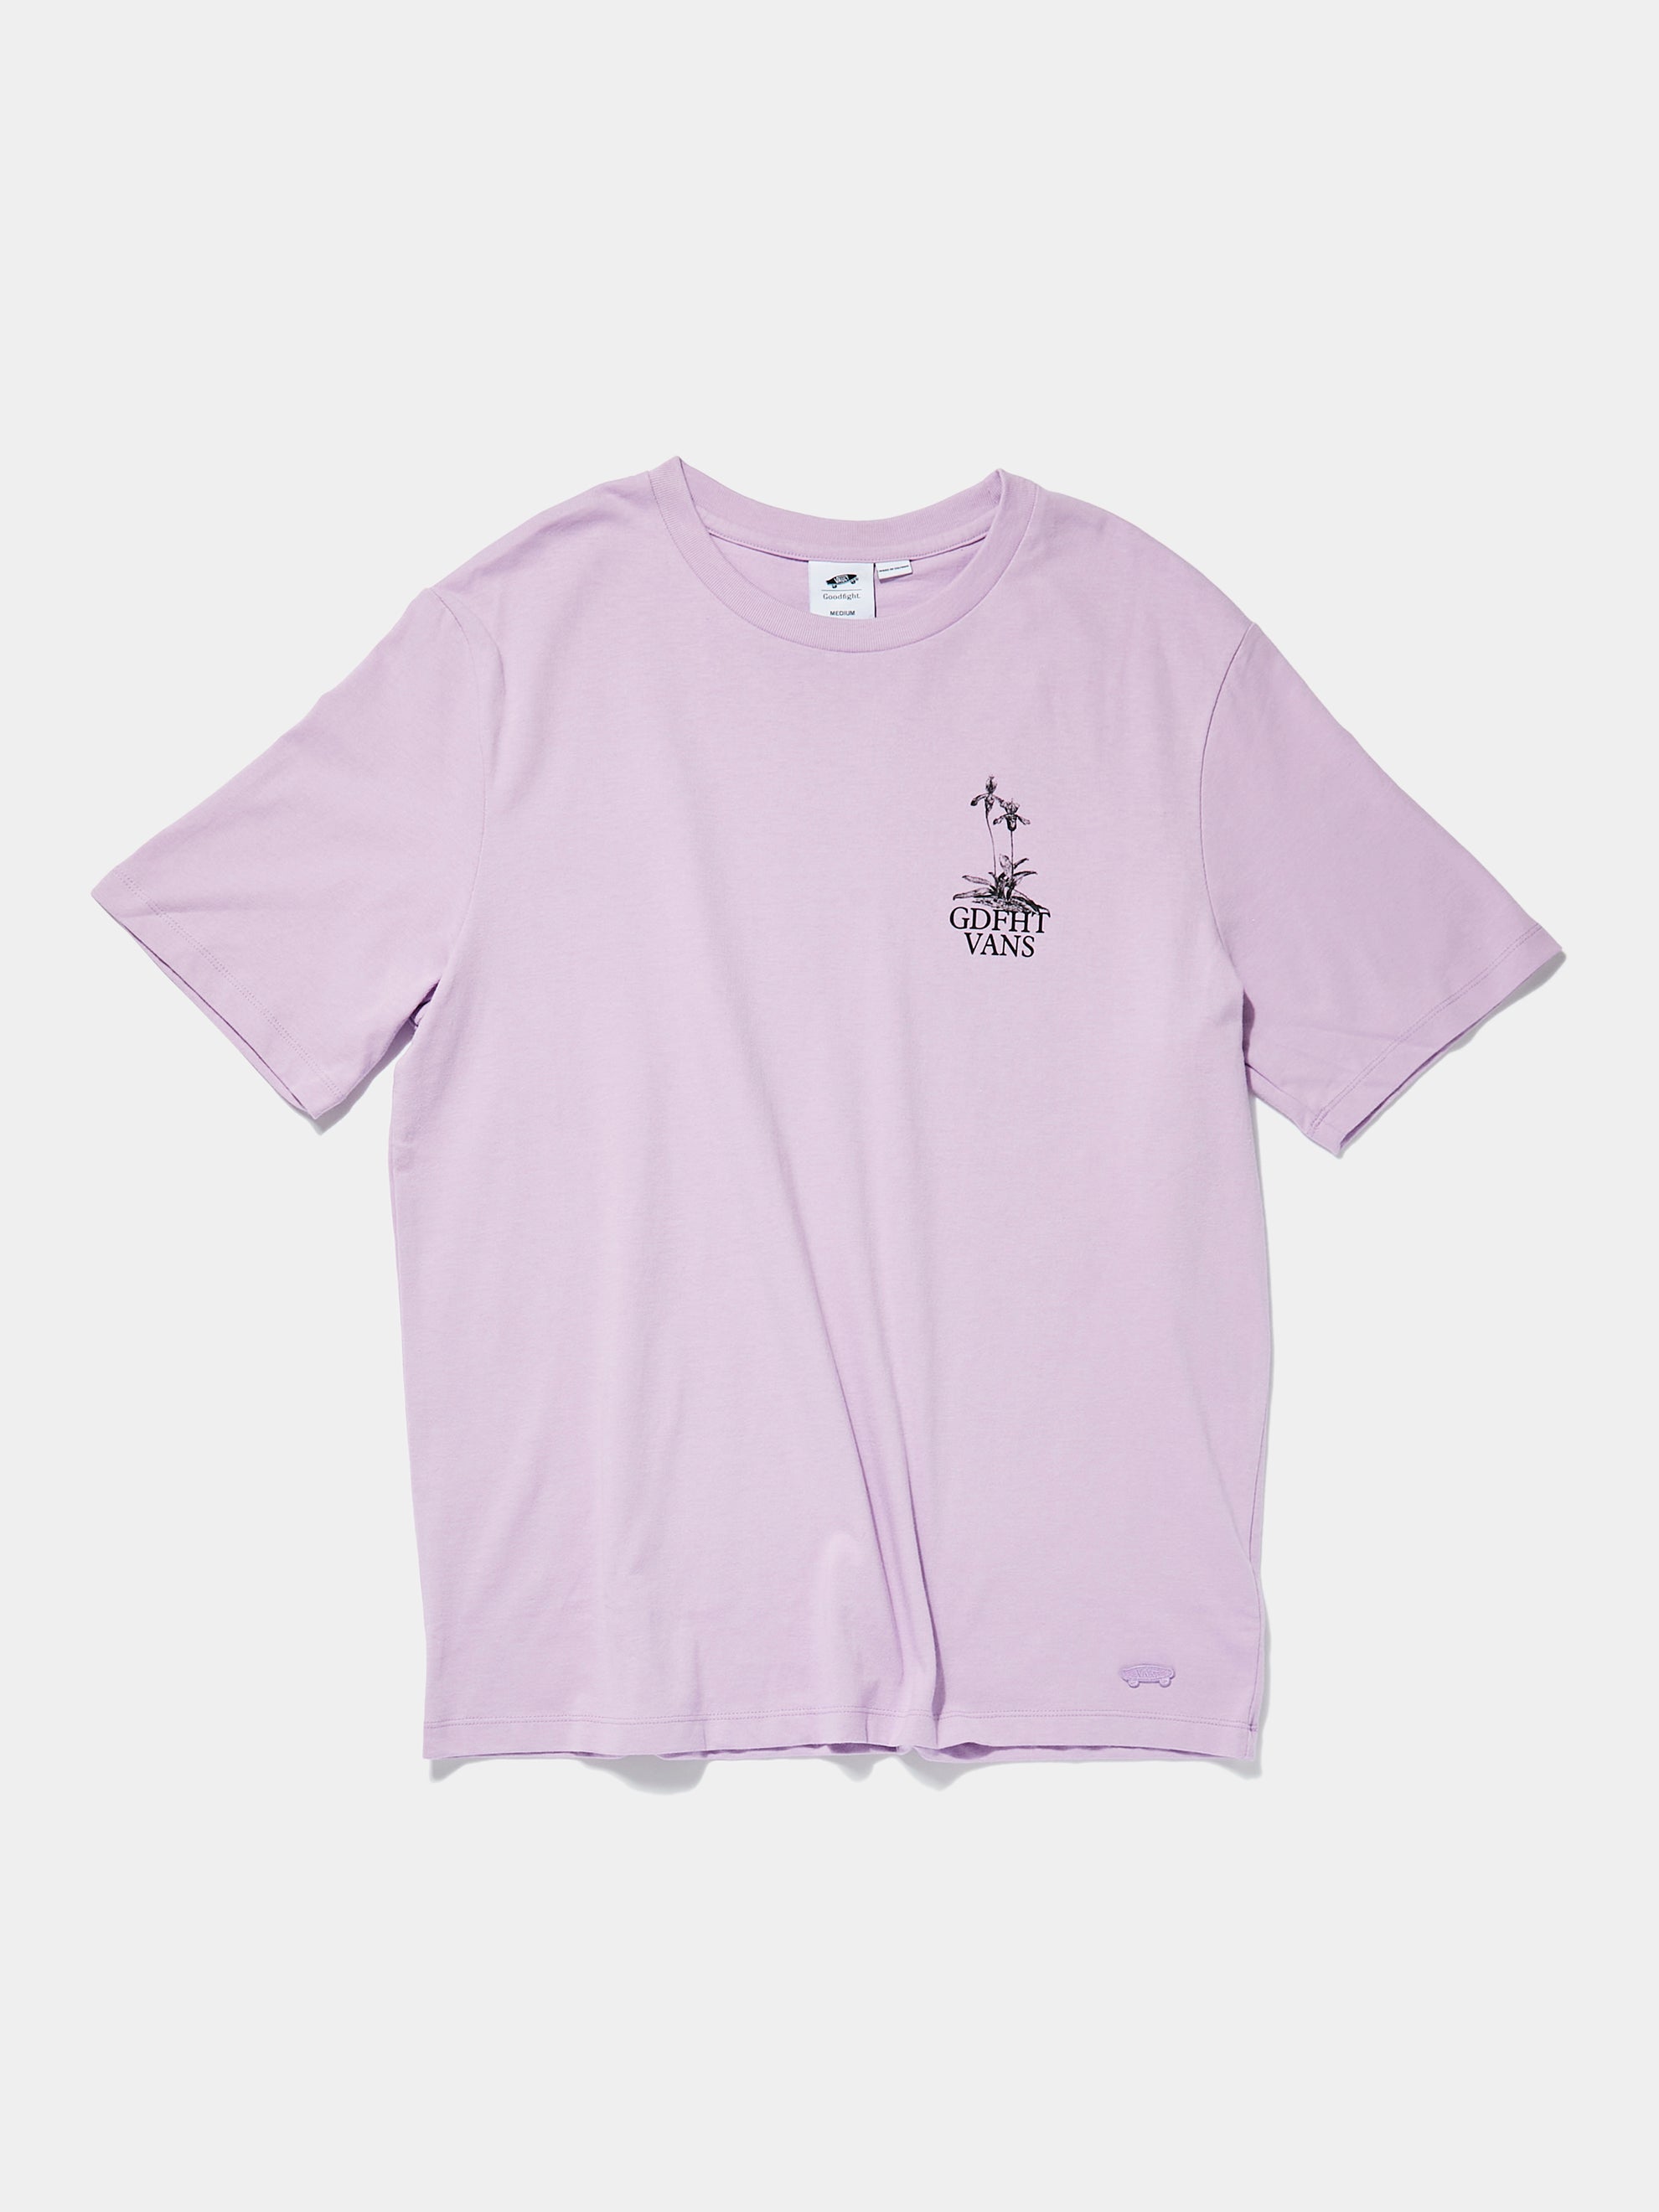 GOODFIGHT x VANS SS T-Shirt (Lupine)